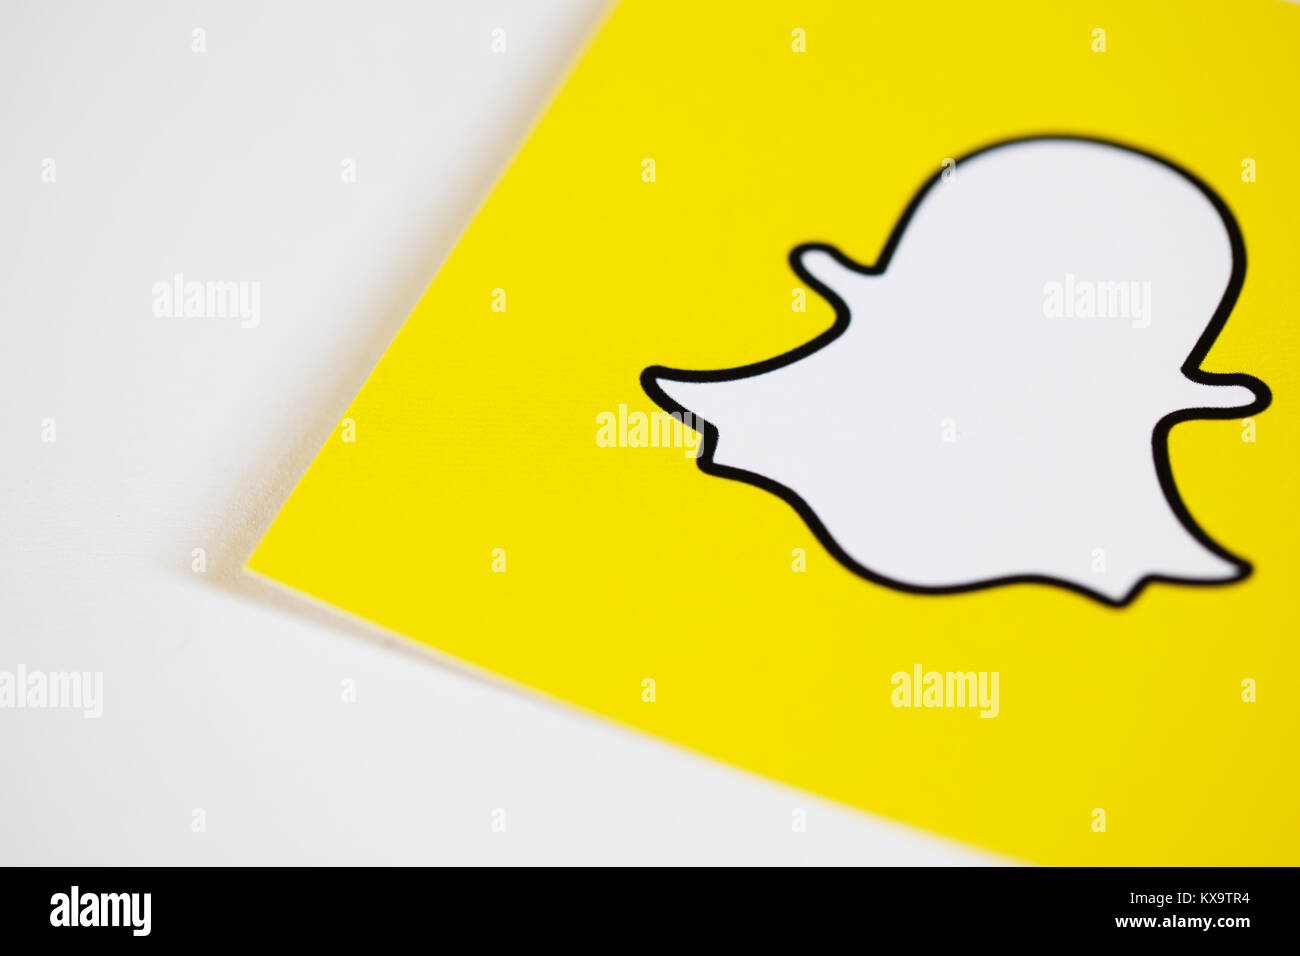 OXFORD, Reino Unido - 5 de diciembre 2016: Snapchat logotipos impresos en papel. Snapchat es una popular aplicación de medios sociales para compartir mensajes, imágenes y vídeos Foto de stock